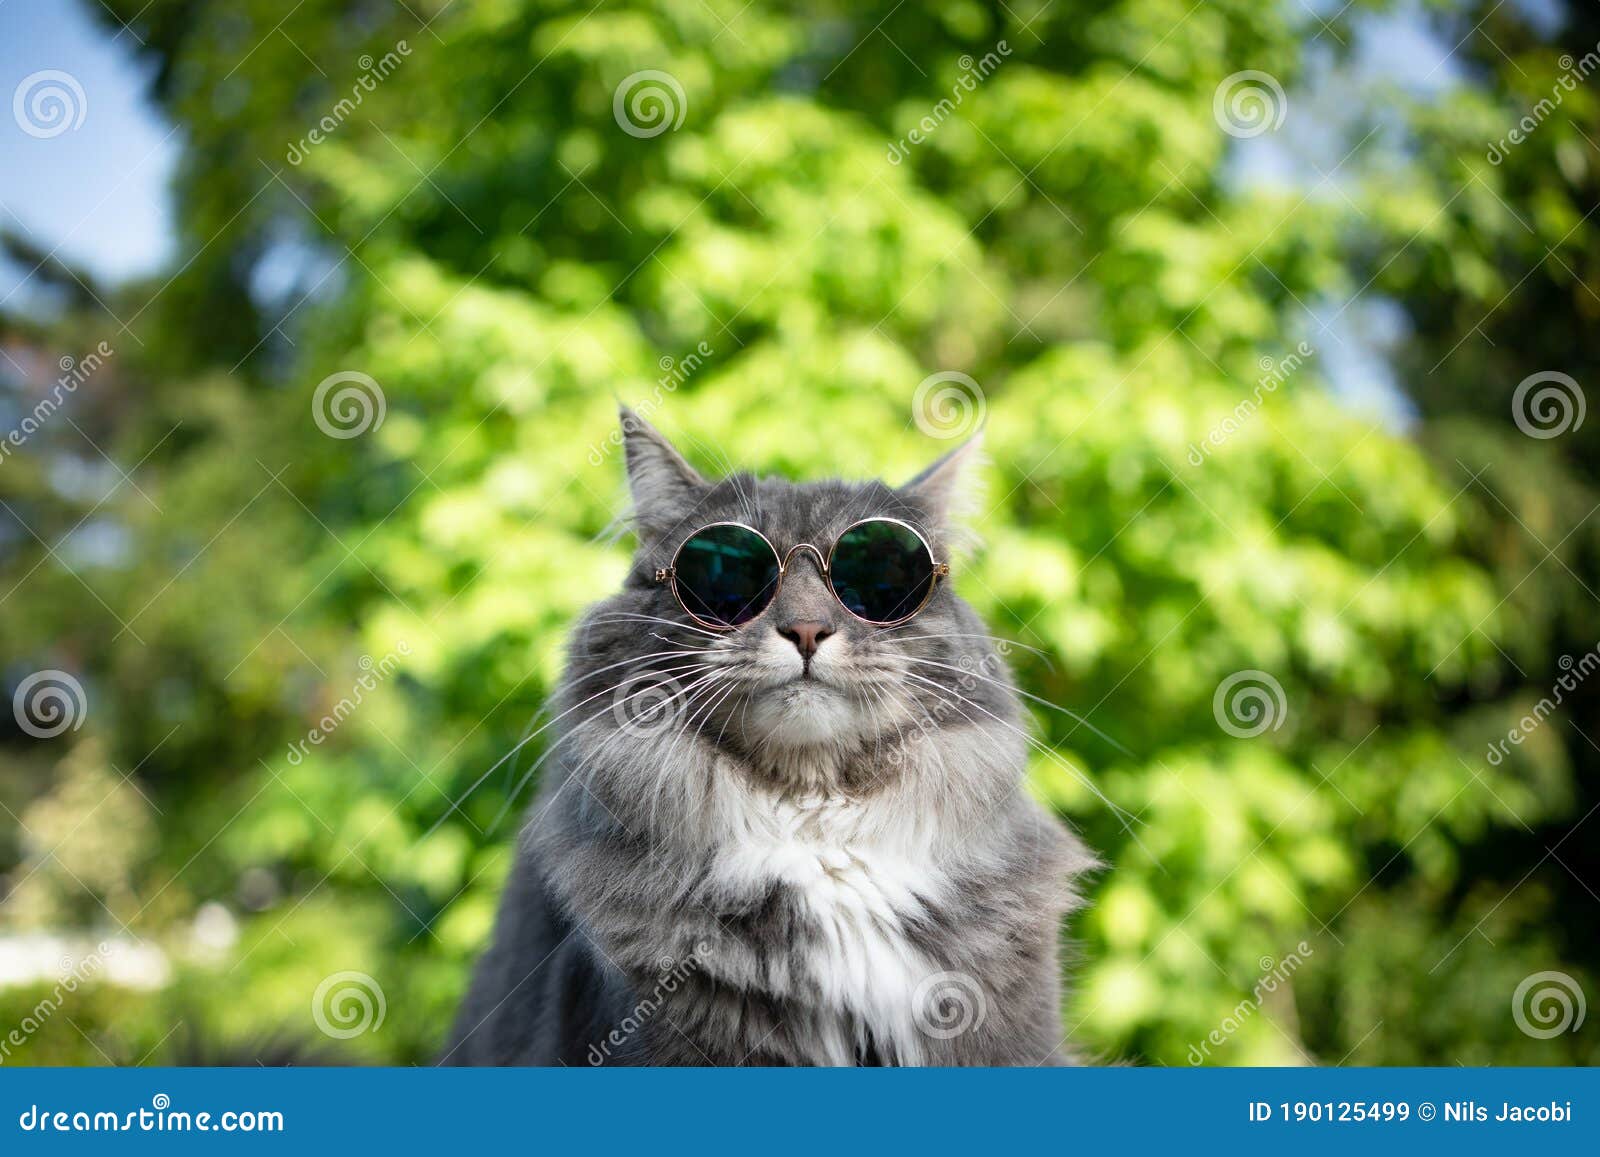 戴墨镜的猫咪头像图片-图库-五毛网